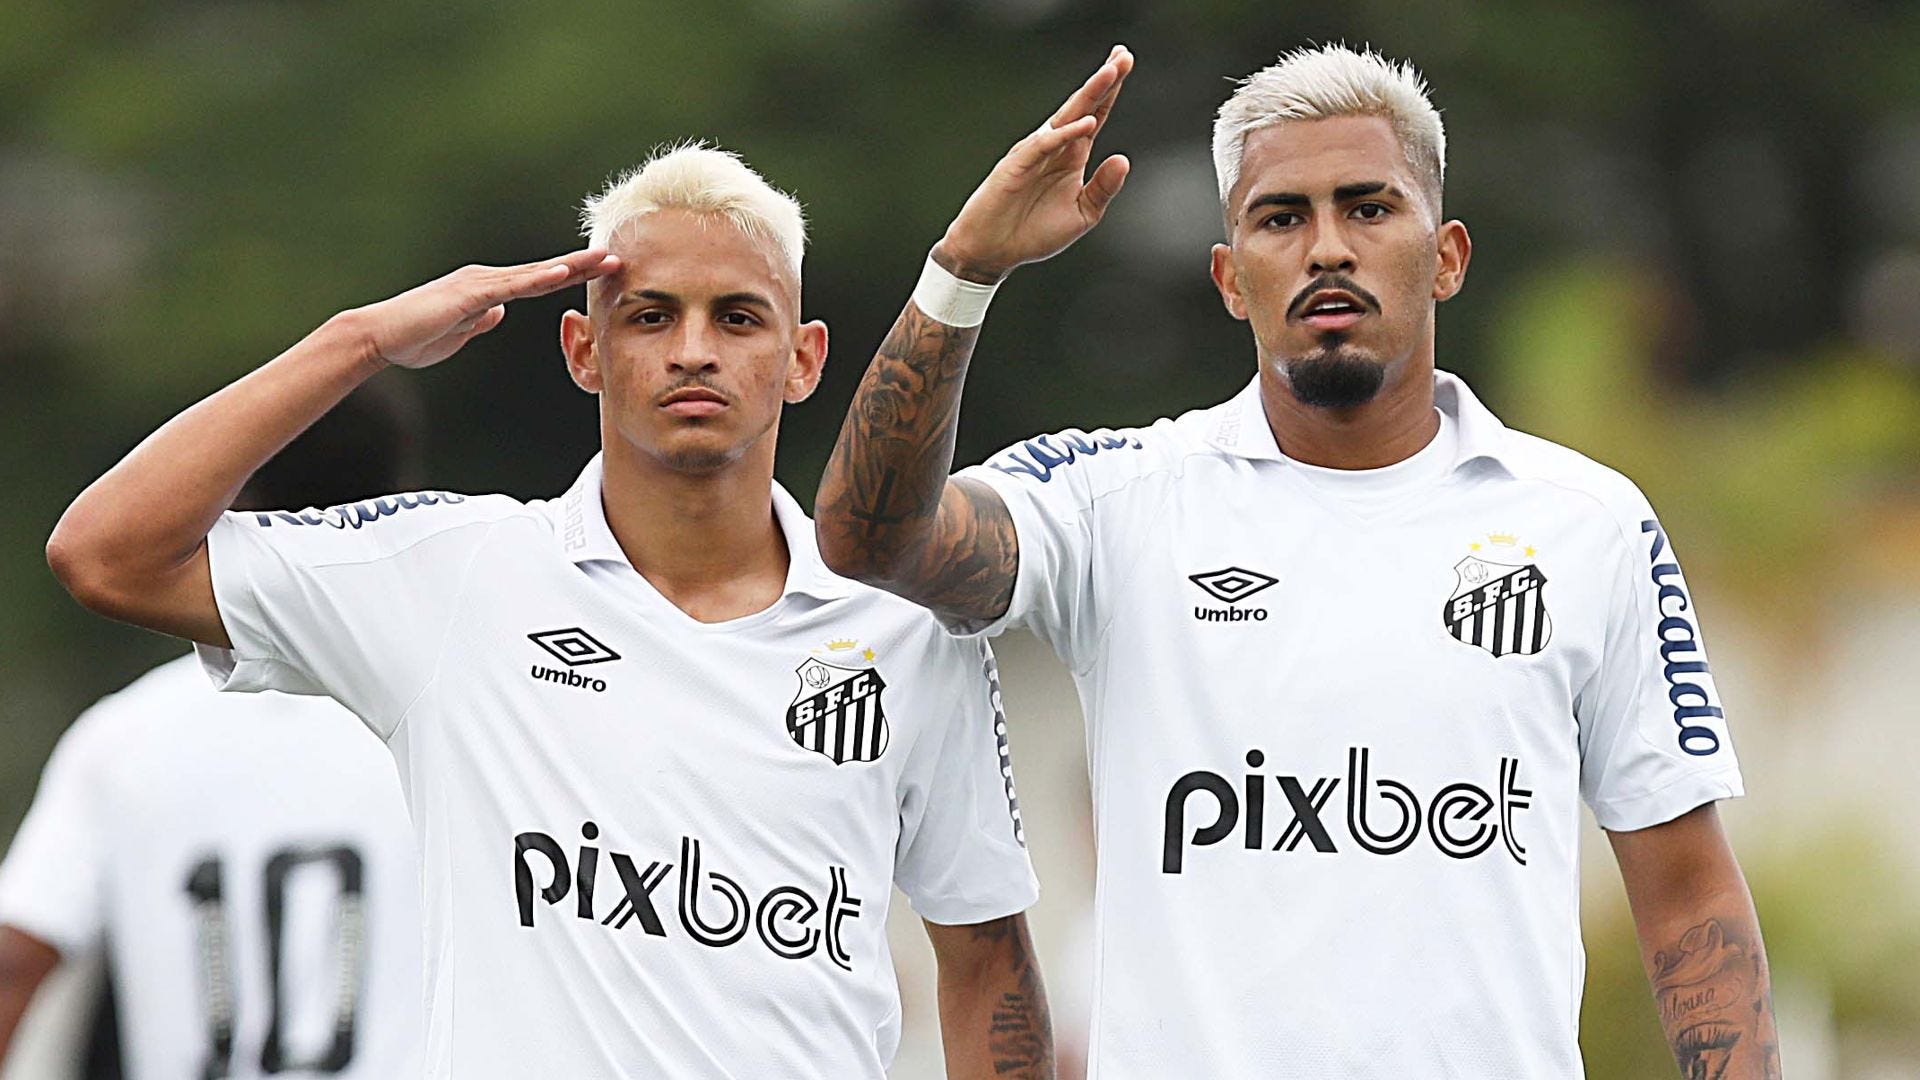 Blaze é a nova patrocinadora máster do Santos FC - Santos Futebol Clube